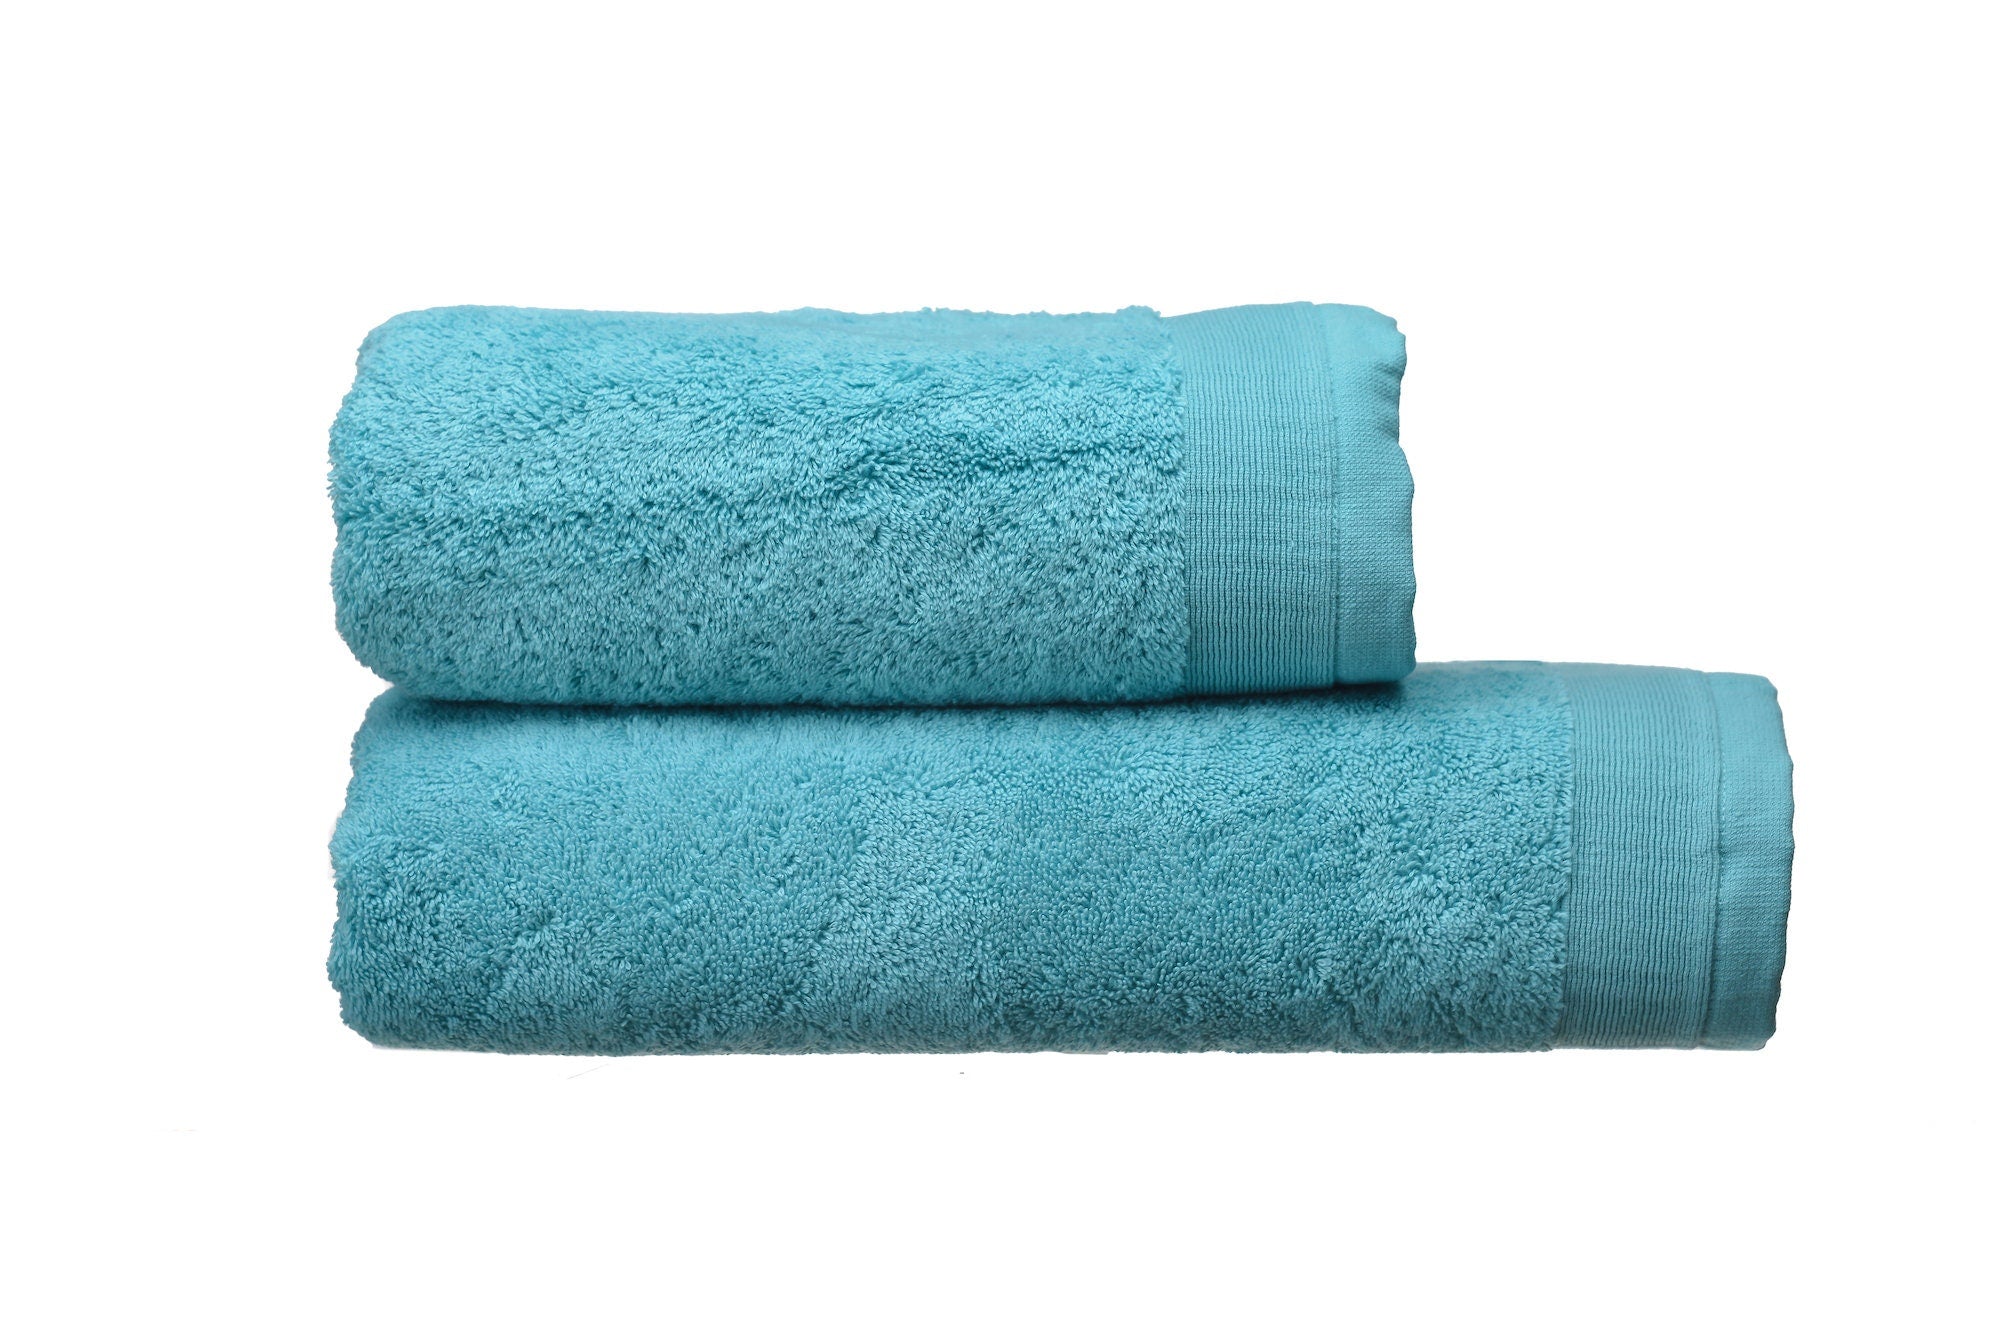 Premium Turkish Bath Towel Set 600 grm, 2 Pieces Set: Bath and Face Towel, 100% Natural Terry Cotton, Soft Touch, Super Absorbent